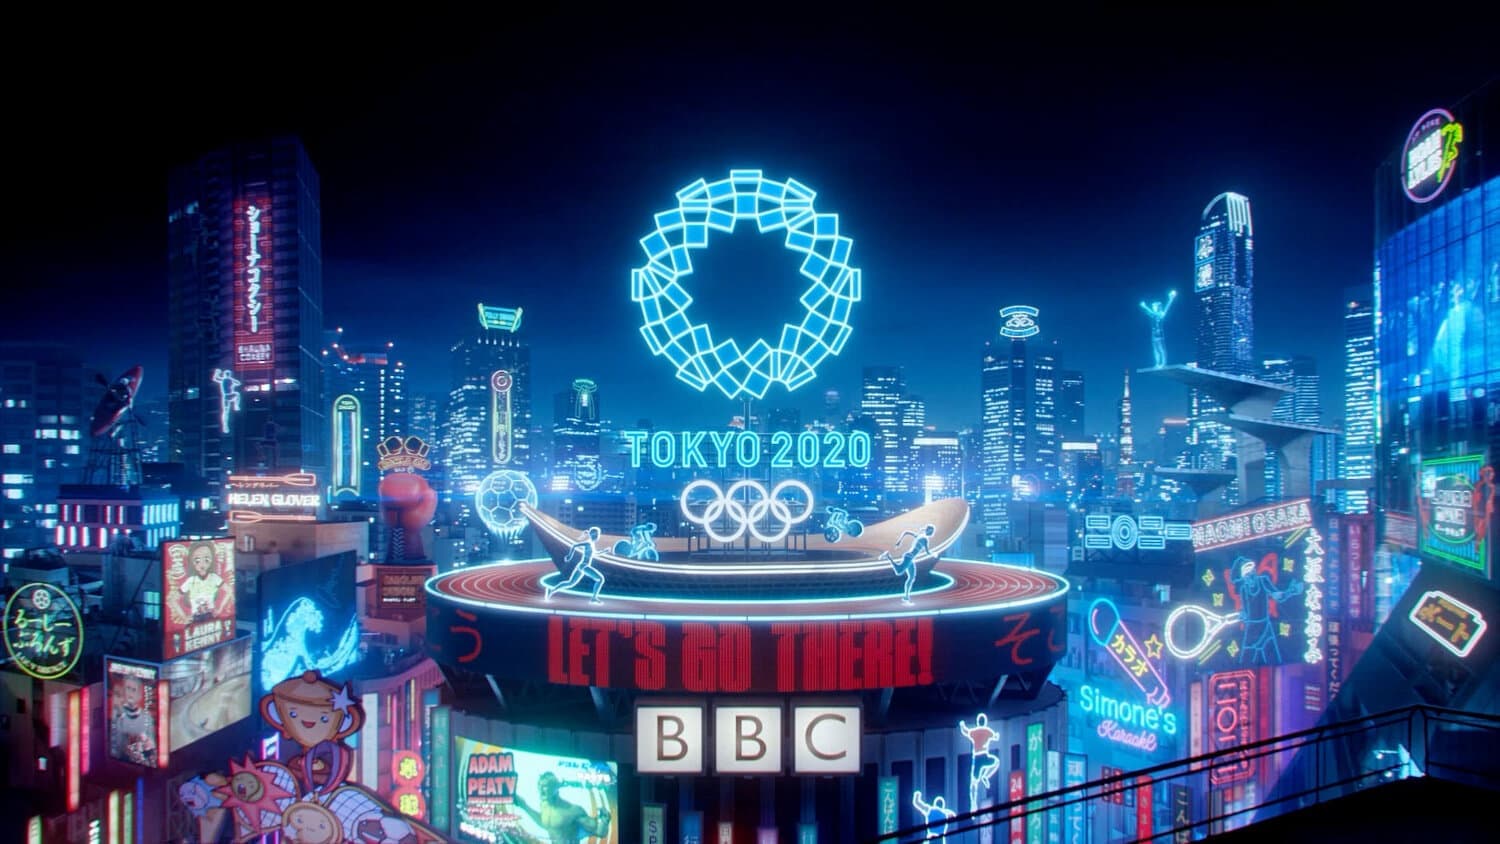 東京オリンピックのトレーラー映像「BBC -Lets Go There- BBC's 2020 Tokyo Olympics Commercial Film」(C)BBC, 2021